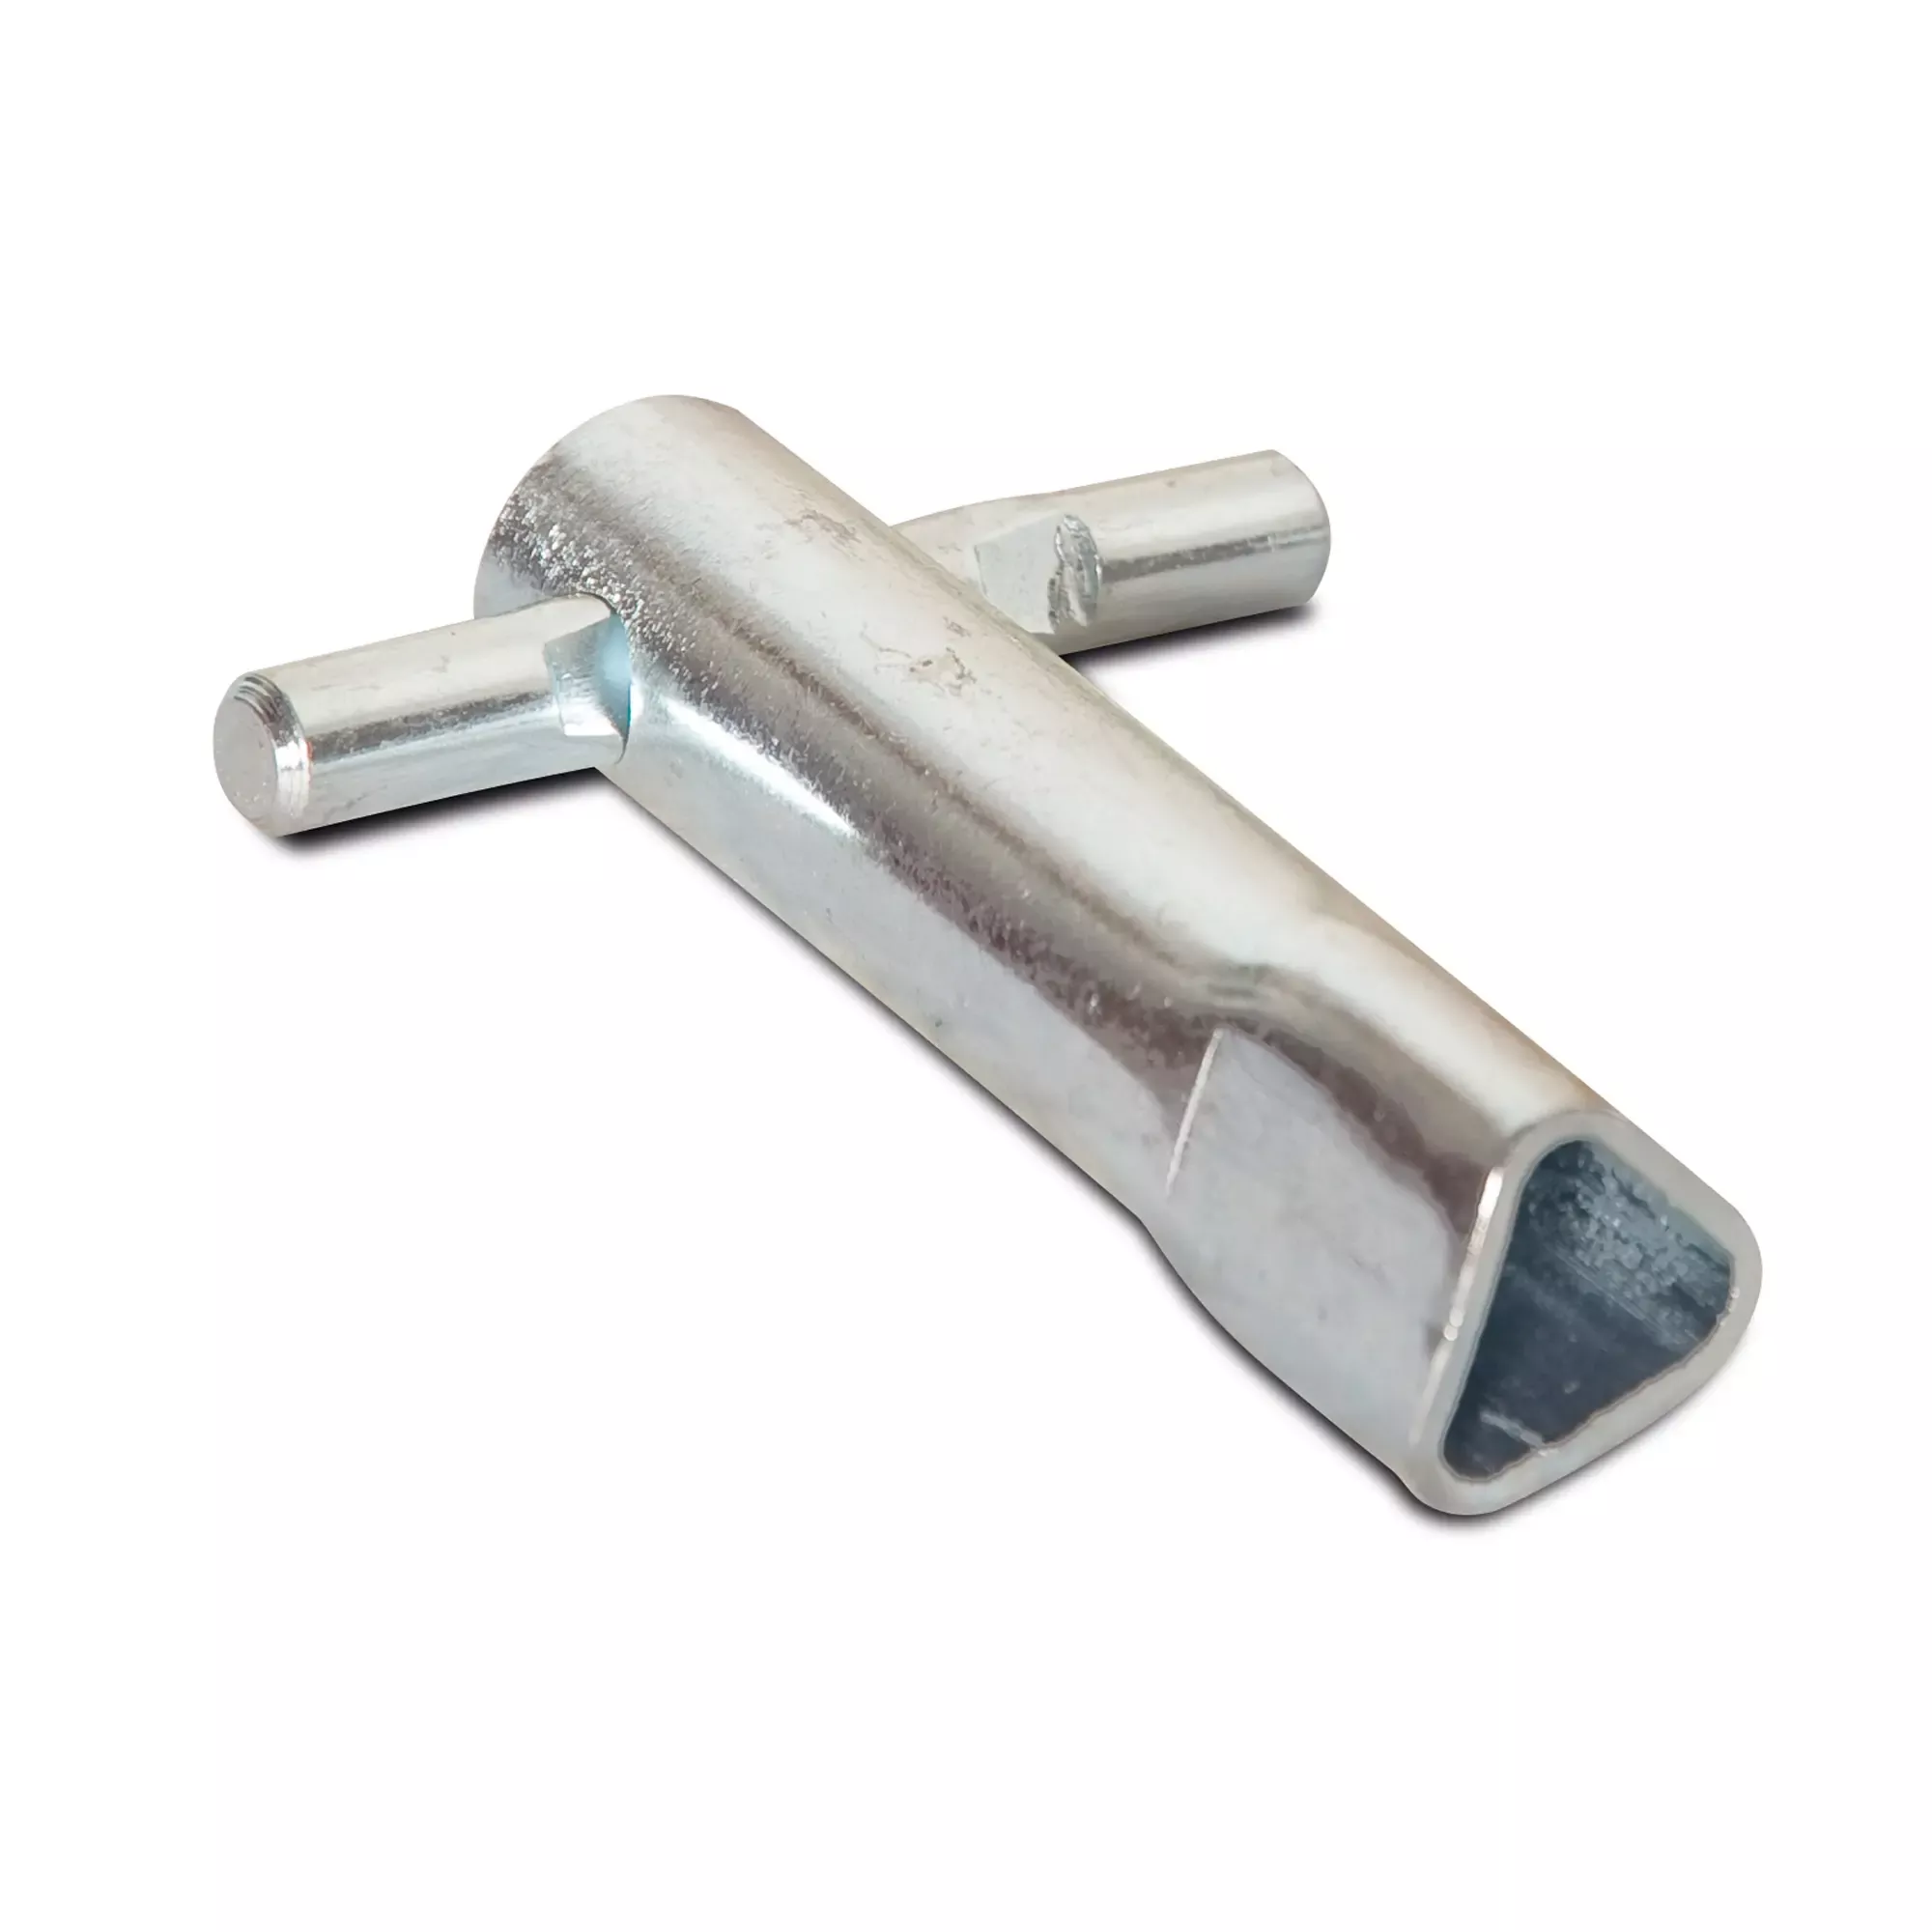 Schlüssel für Dreikantverschluss nach DIN 3223, für System-, Gatter- und Drehschranken